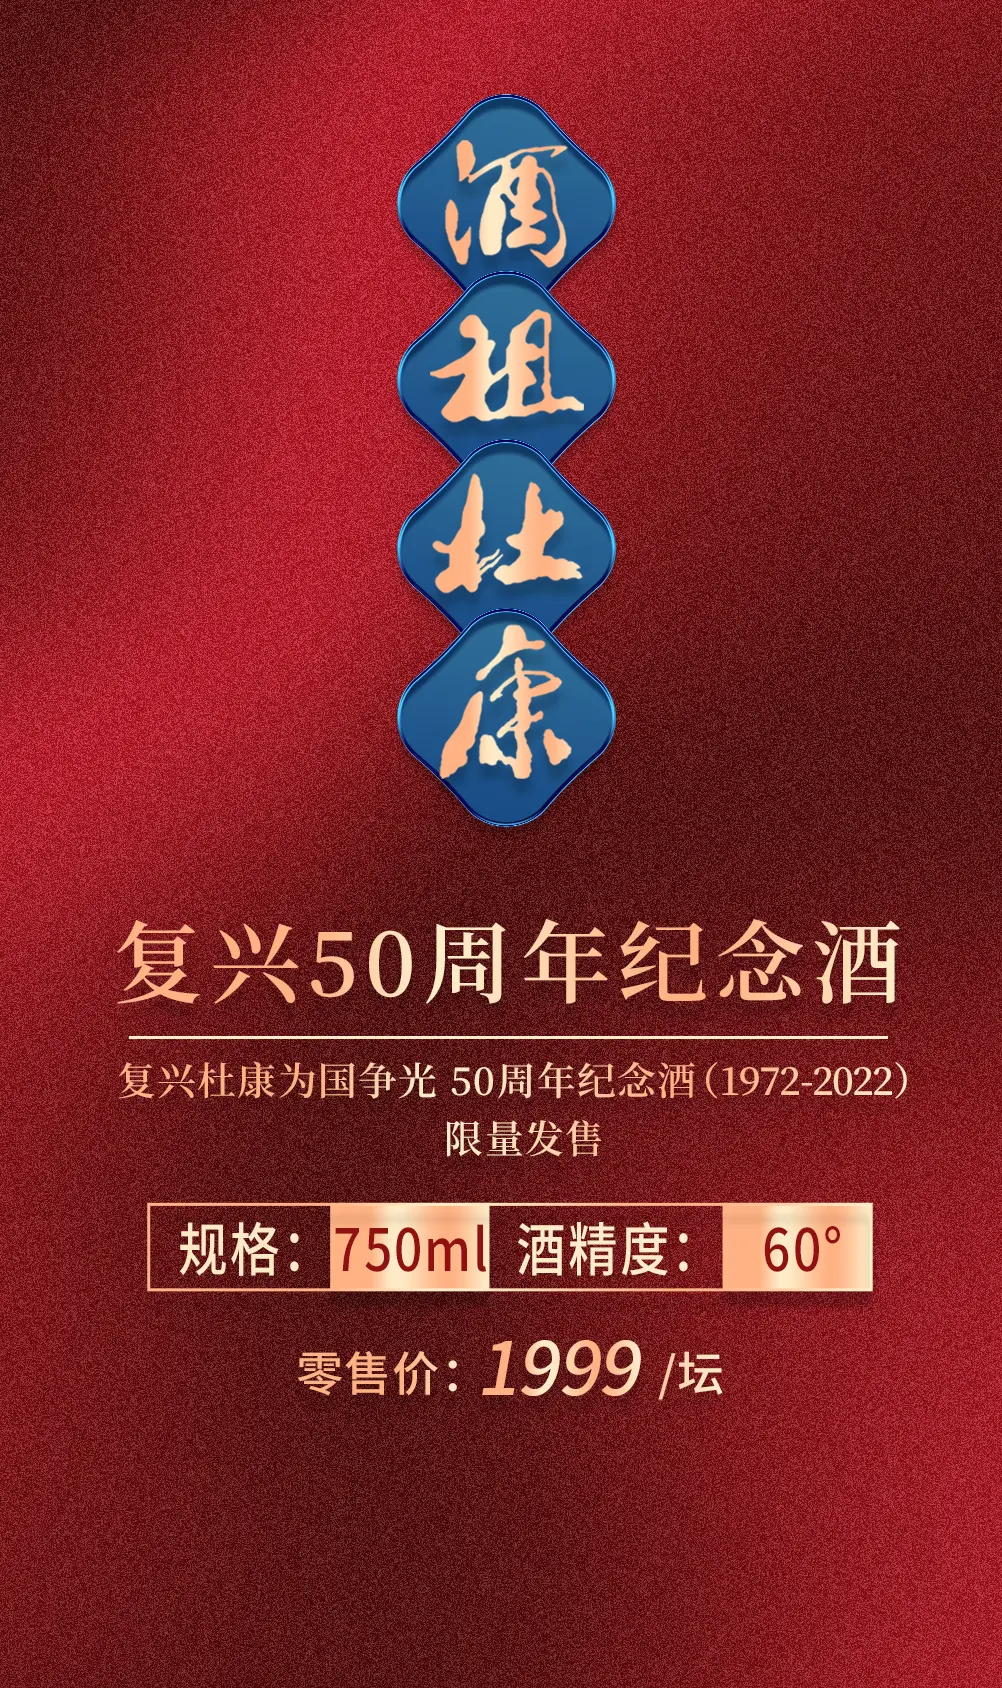 酒祖杜康·复兴50周年纪念酒，荣耀发布